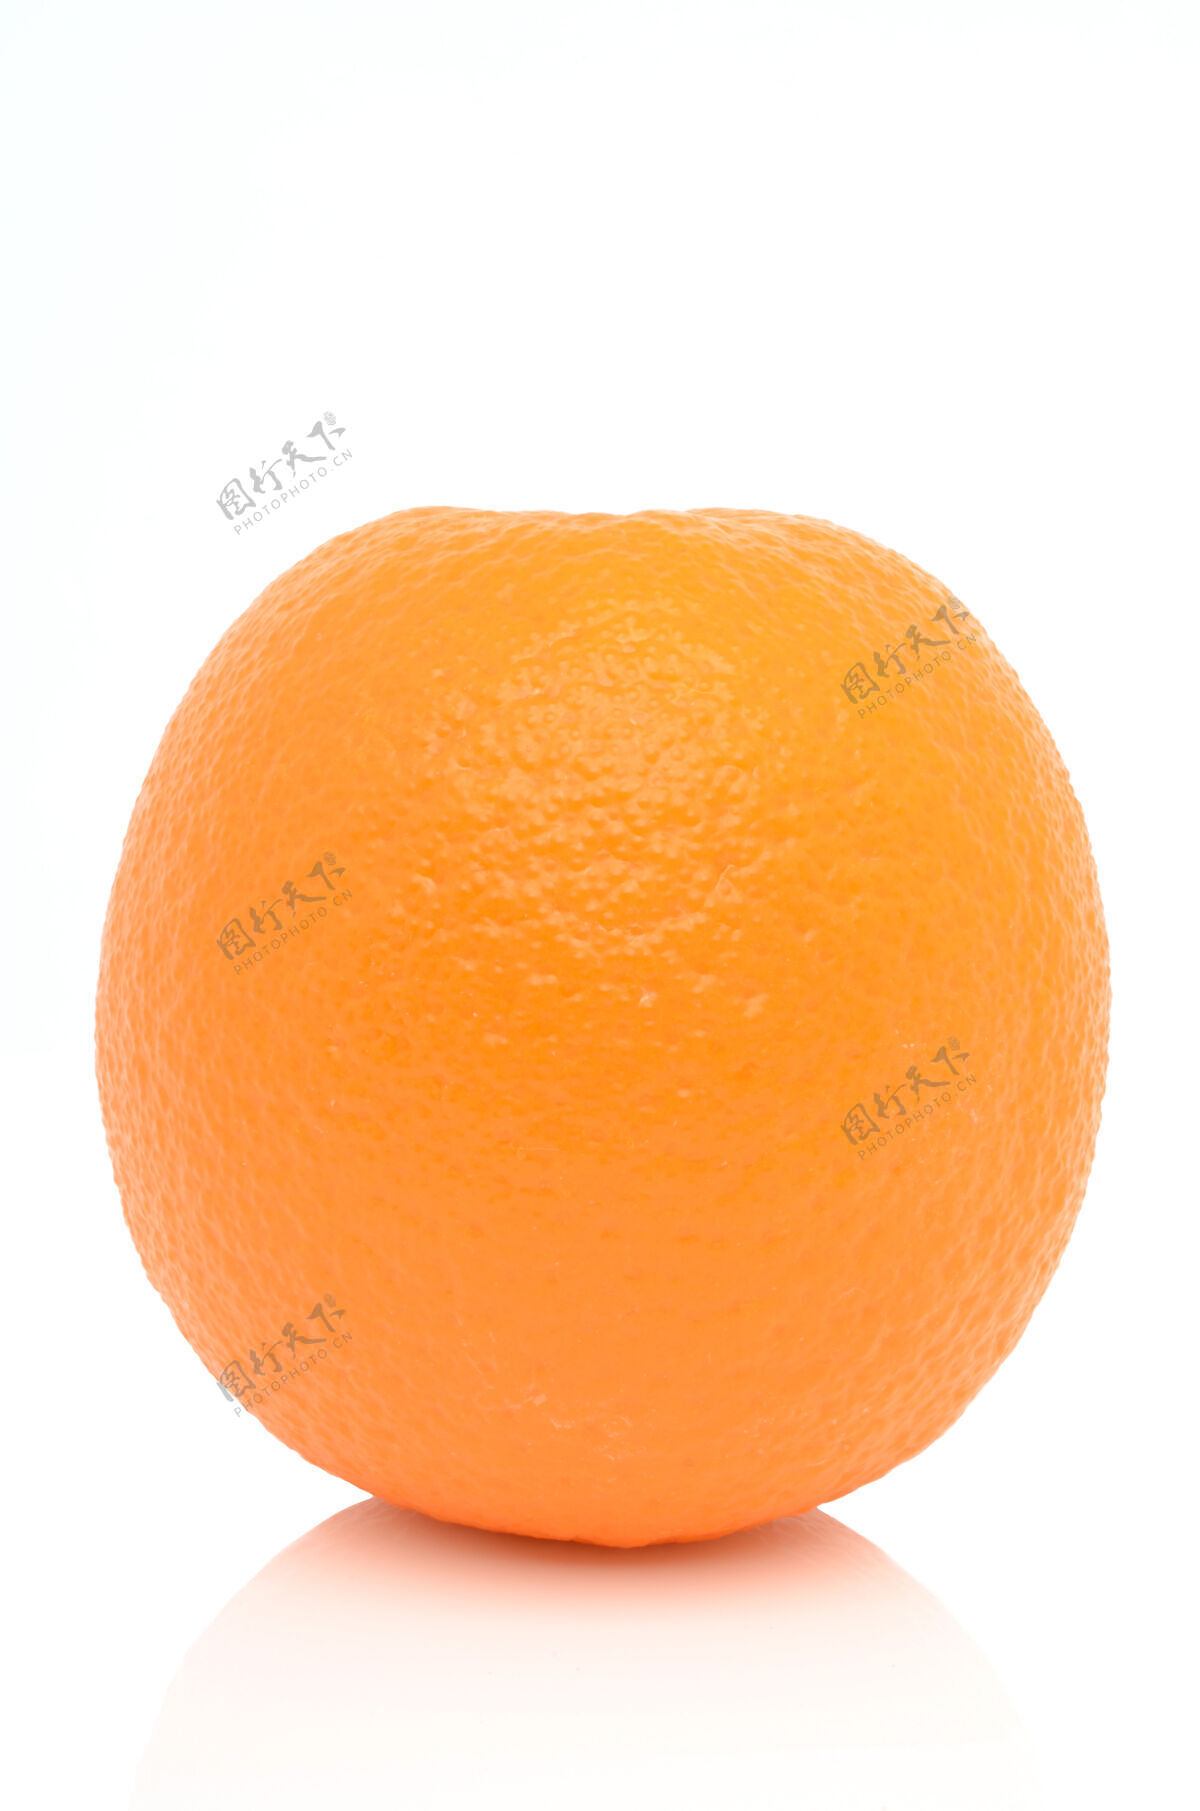 配料橘子在白色的表面生的节部分